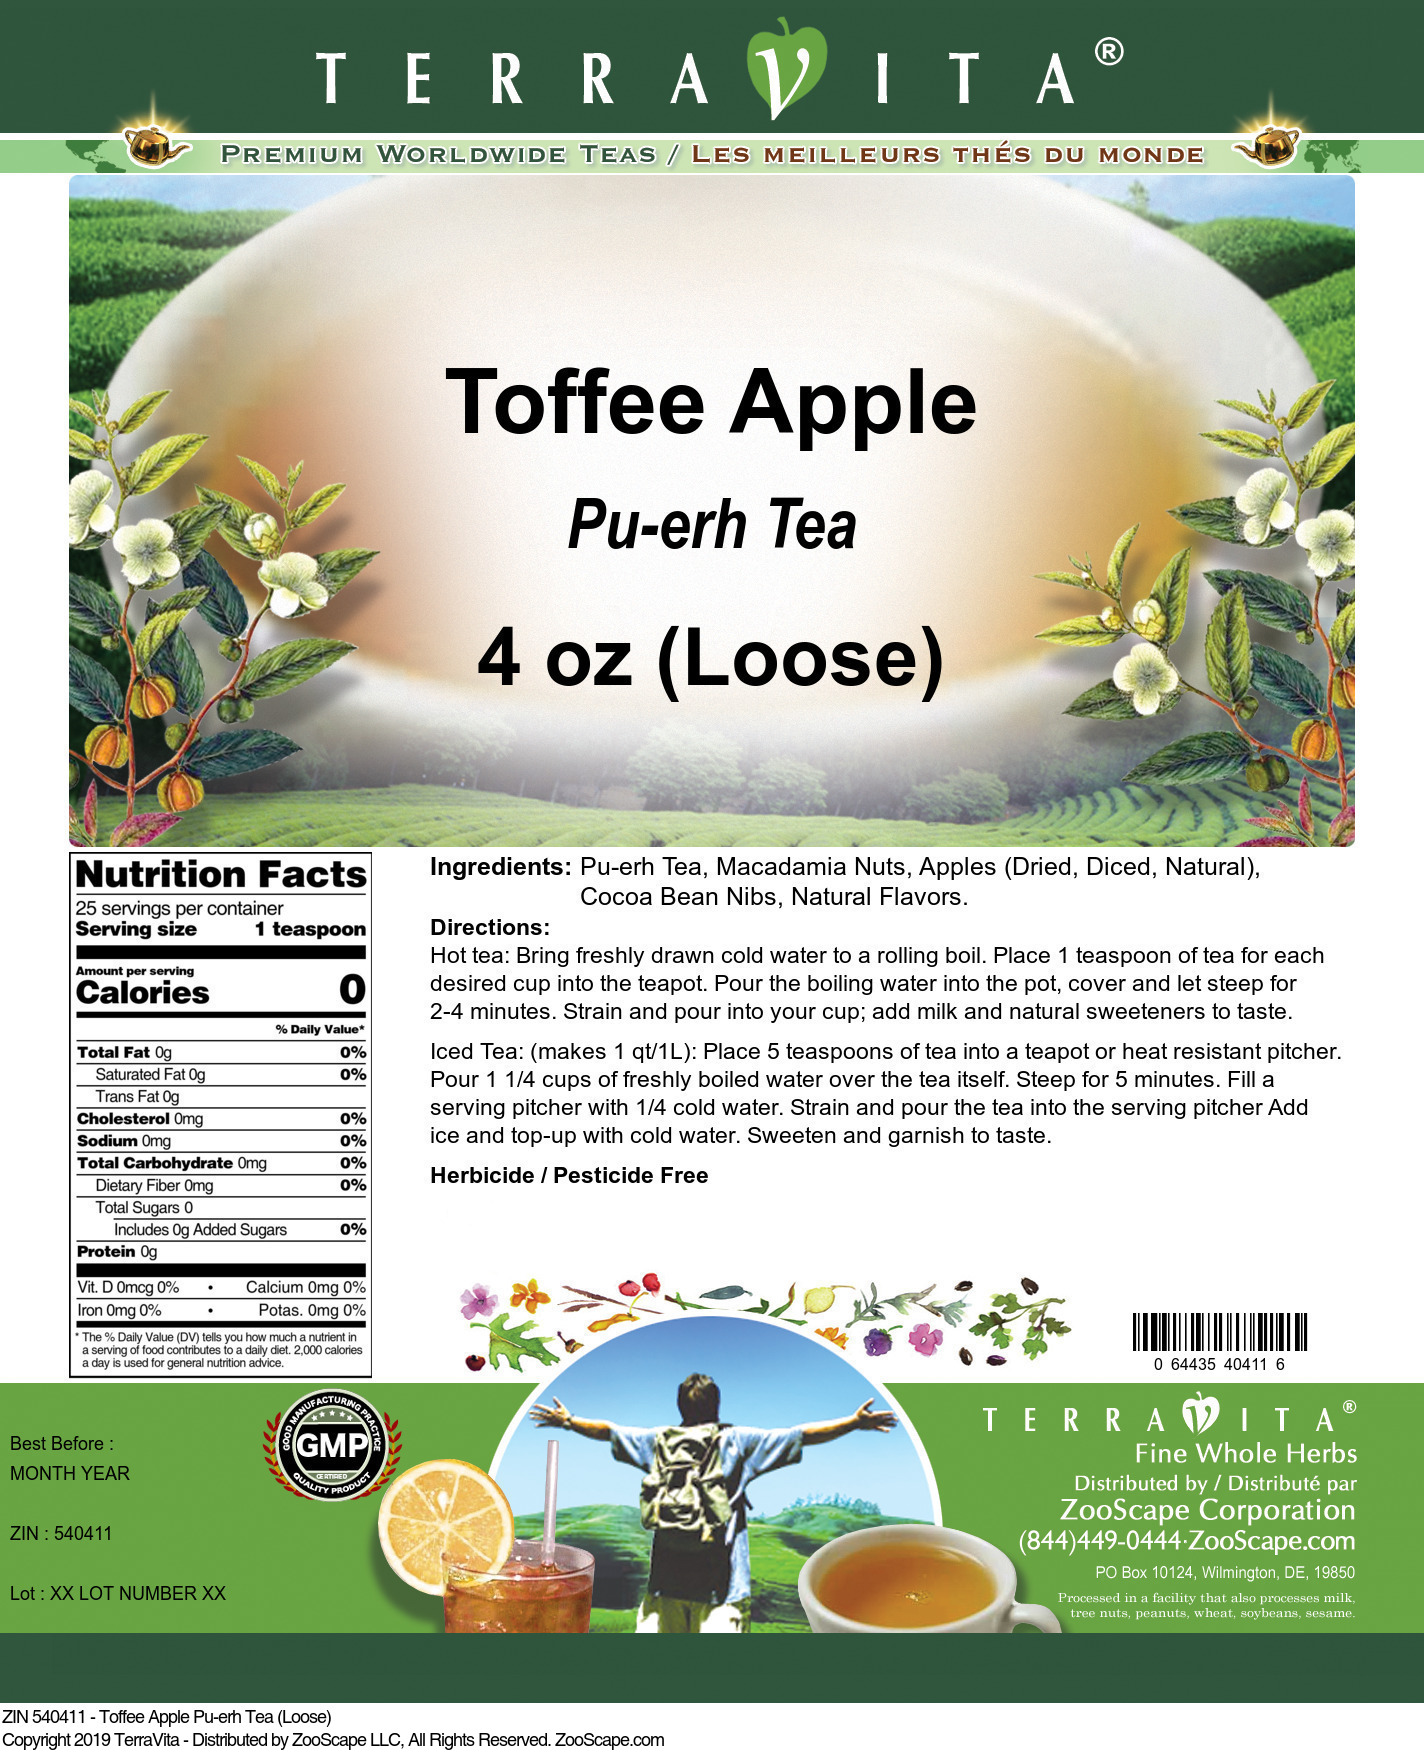 Toffee Apple Pu-erh Tea (Loose) - Label